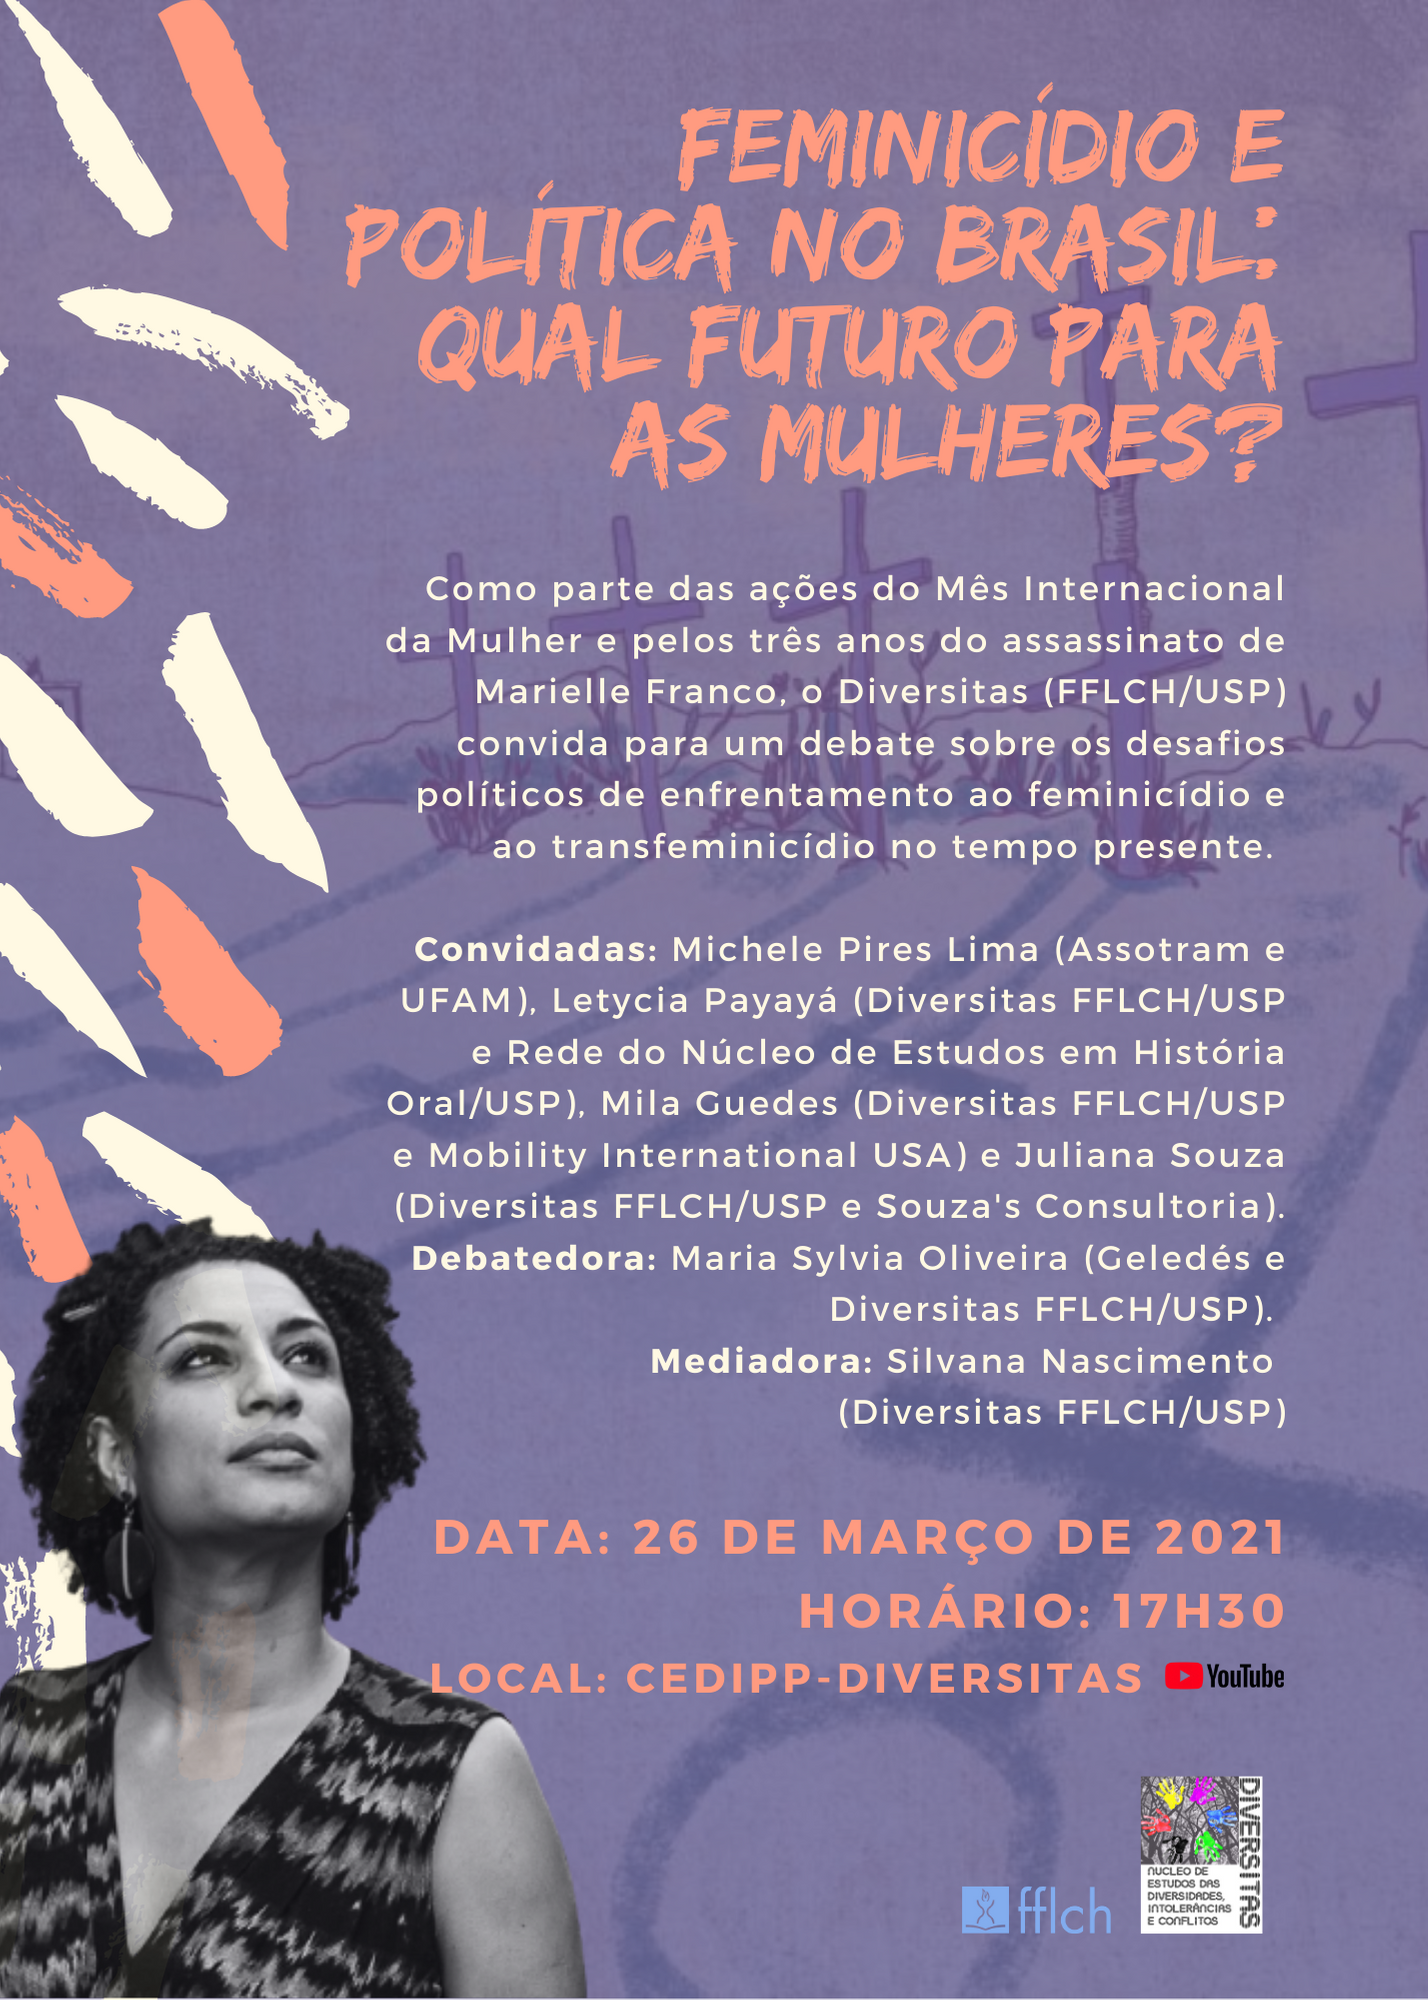 Feminicídio e política no Brasil: qual futuro para as mulheres?